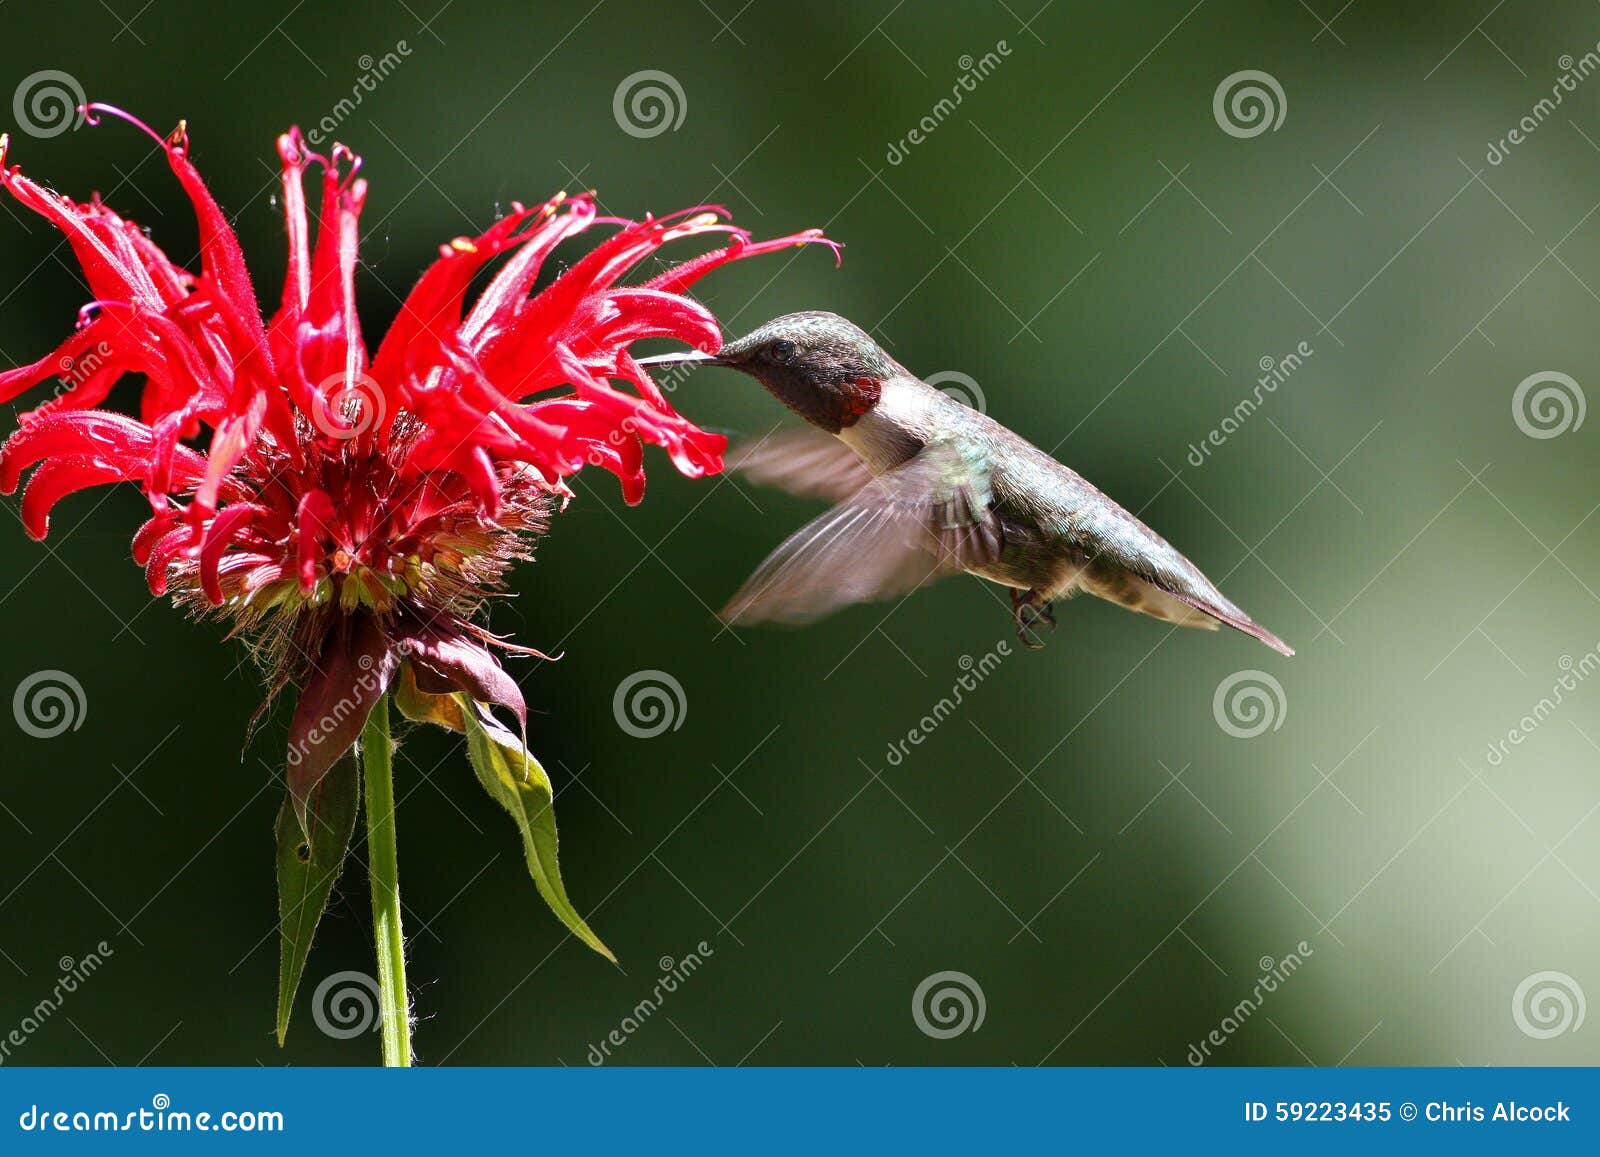 Männlicher Kolibri, der auf eine Blume einzieht. Männlicher Rufus-Kolibri, der auf Nektar von einem Scharlachrot Bienenbalsam-Blume im Frühjahr einzieht Kolibri, der über einer roten Blume in Illinois mit einem grünen Hintergrund isst und schwebt